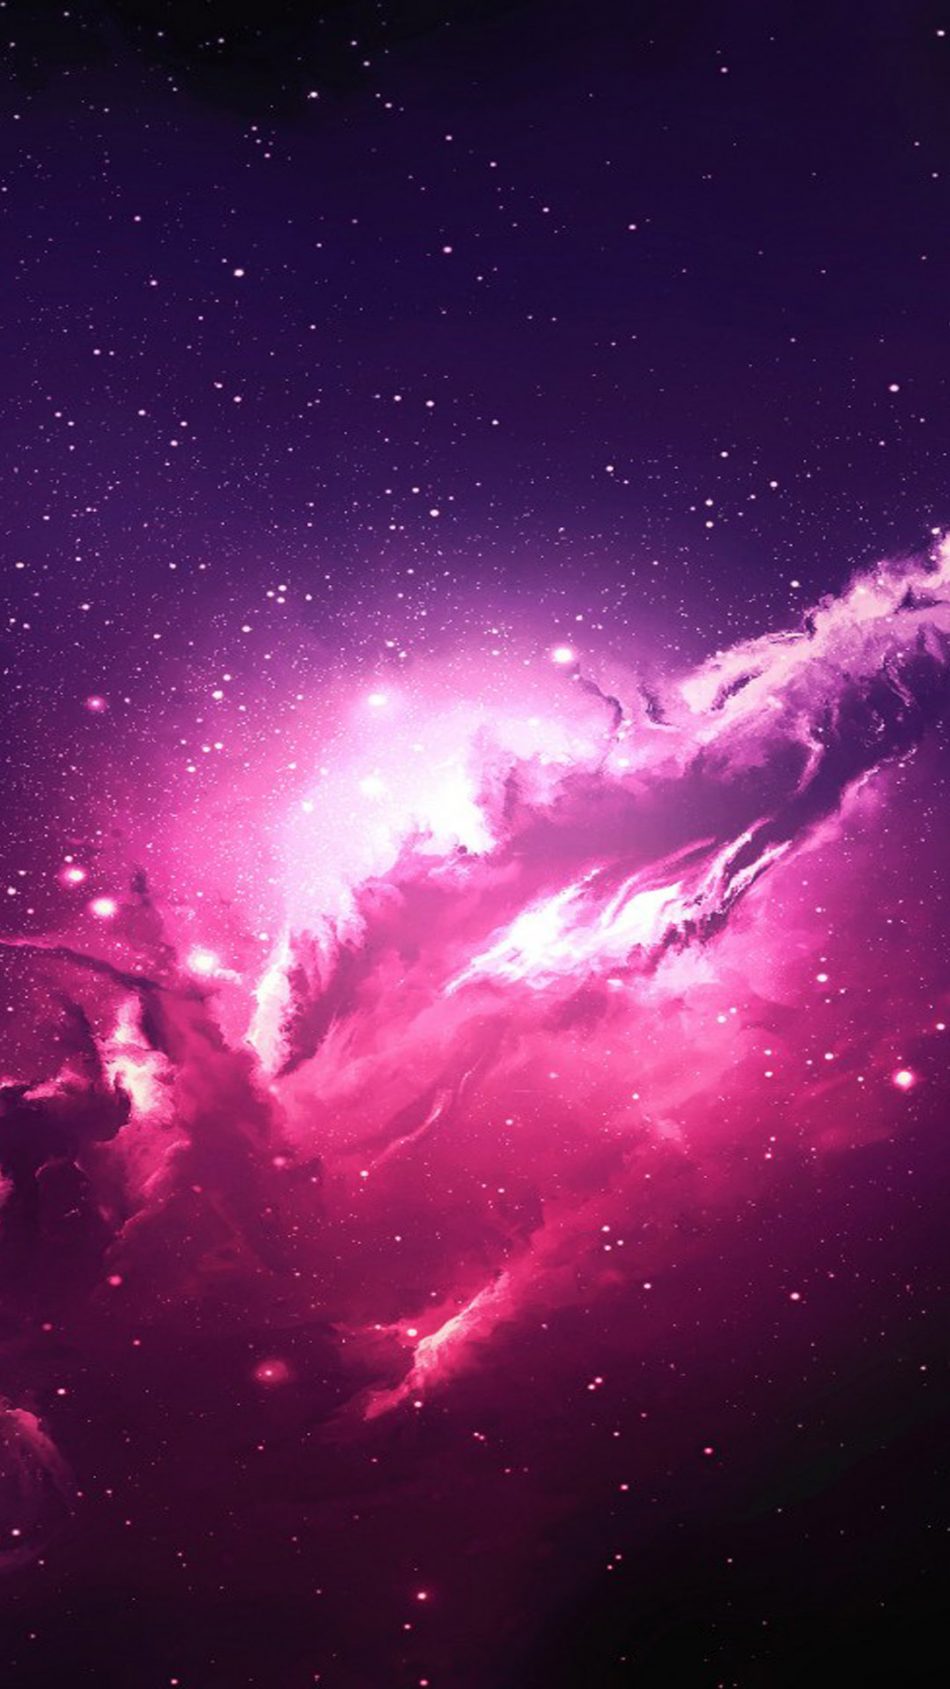 Thiên hà hồng đỏ: Hãy để bầu trời trở nên sống động hơn với hình ảnh thiên hà hồng đỏ. Điều đặc biệt ở hình ảnh này là sự kết hợp của những tia sáng lấp lánh và màu sắc đầy sức sống. Bạn sẽ không thể rời mắt khỏi những vì sao rực rỡ này.